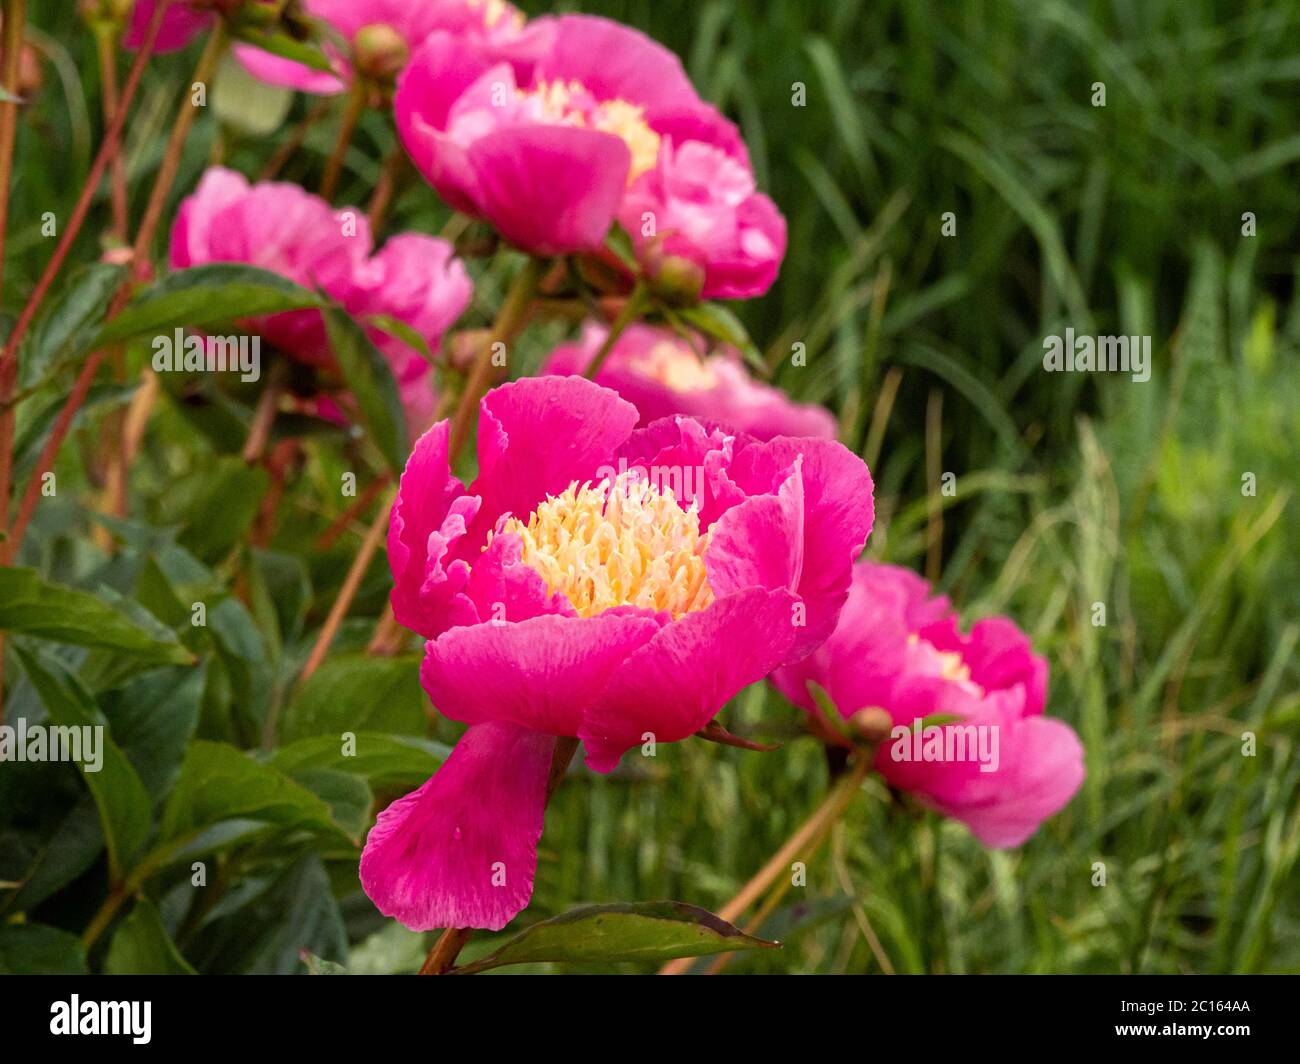 Hermosa flor de peonía con pétalos rosados y estambres amarillos, variedad Paeonia lactiflora largo Foto de stock